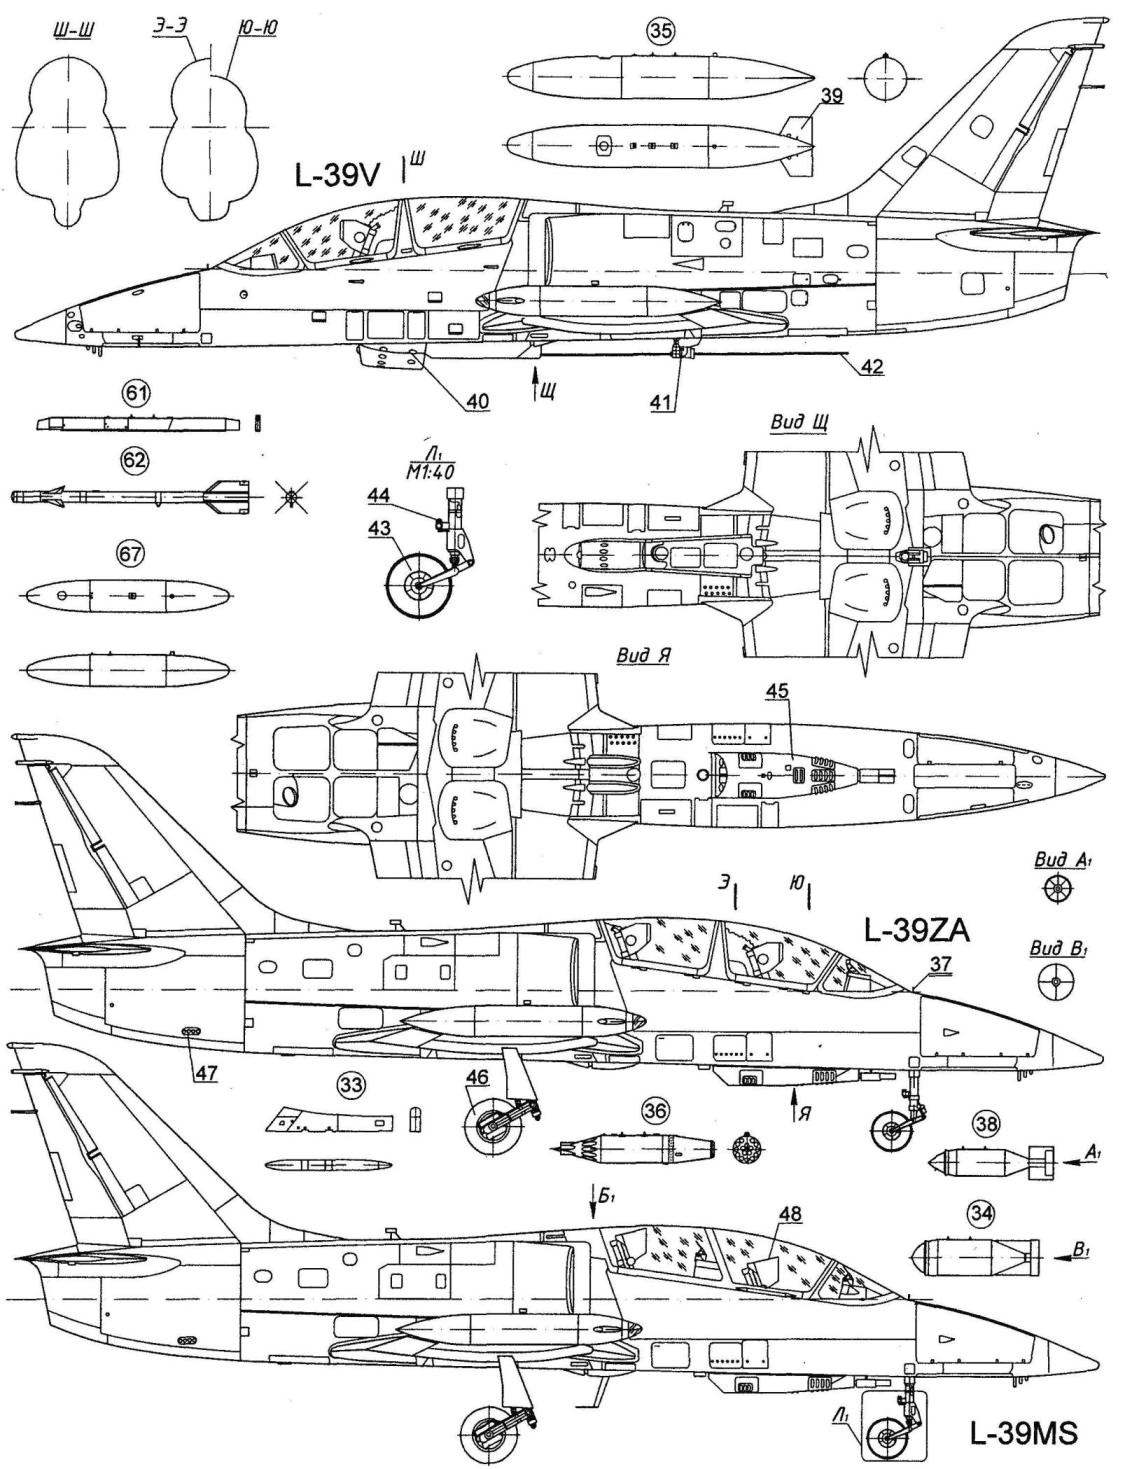 Учебно-боевой самолет L-39